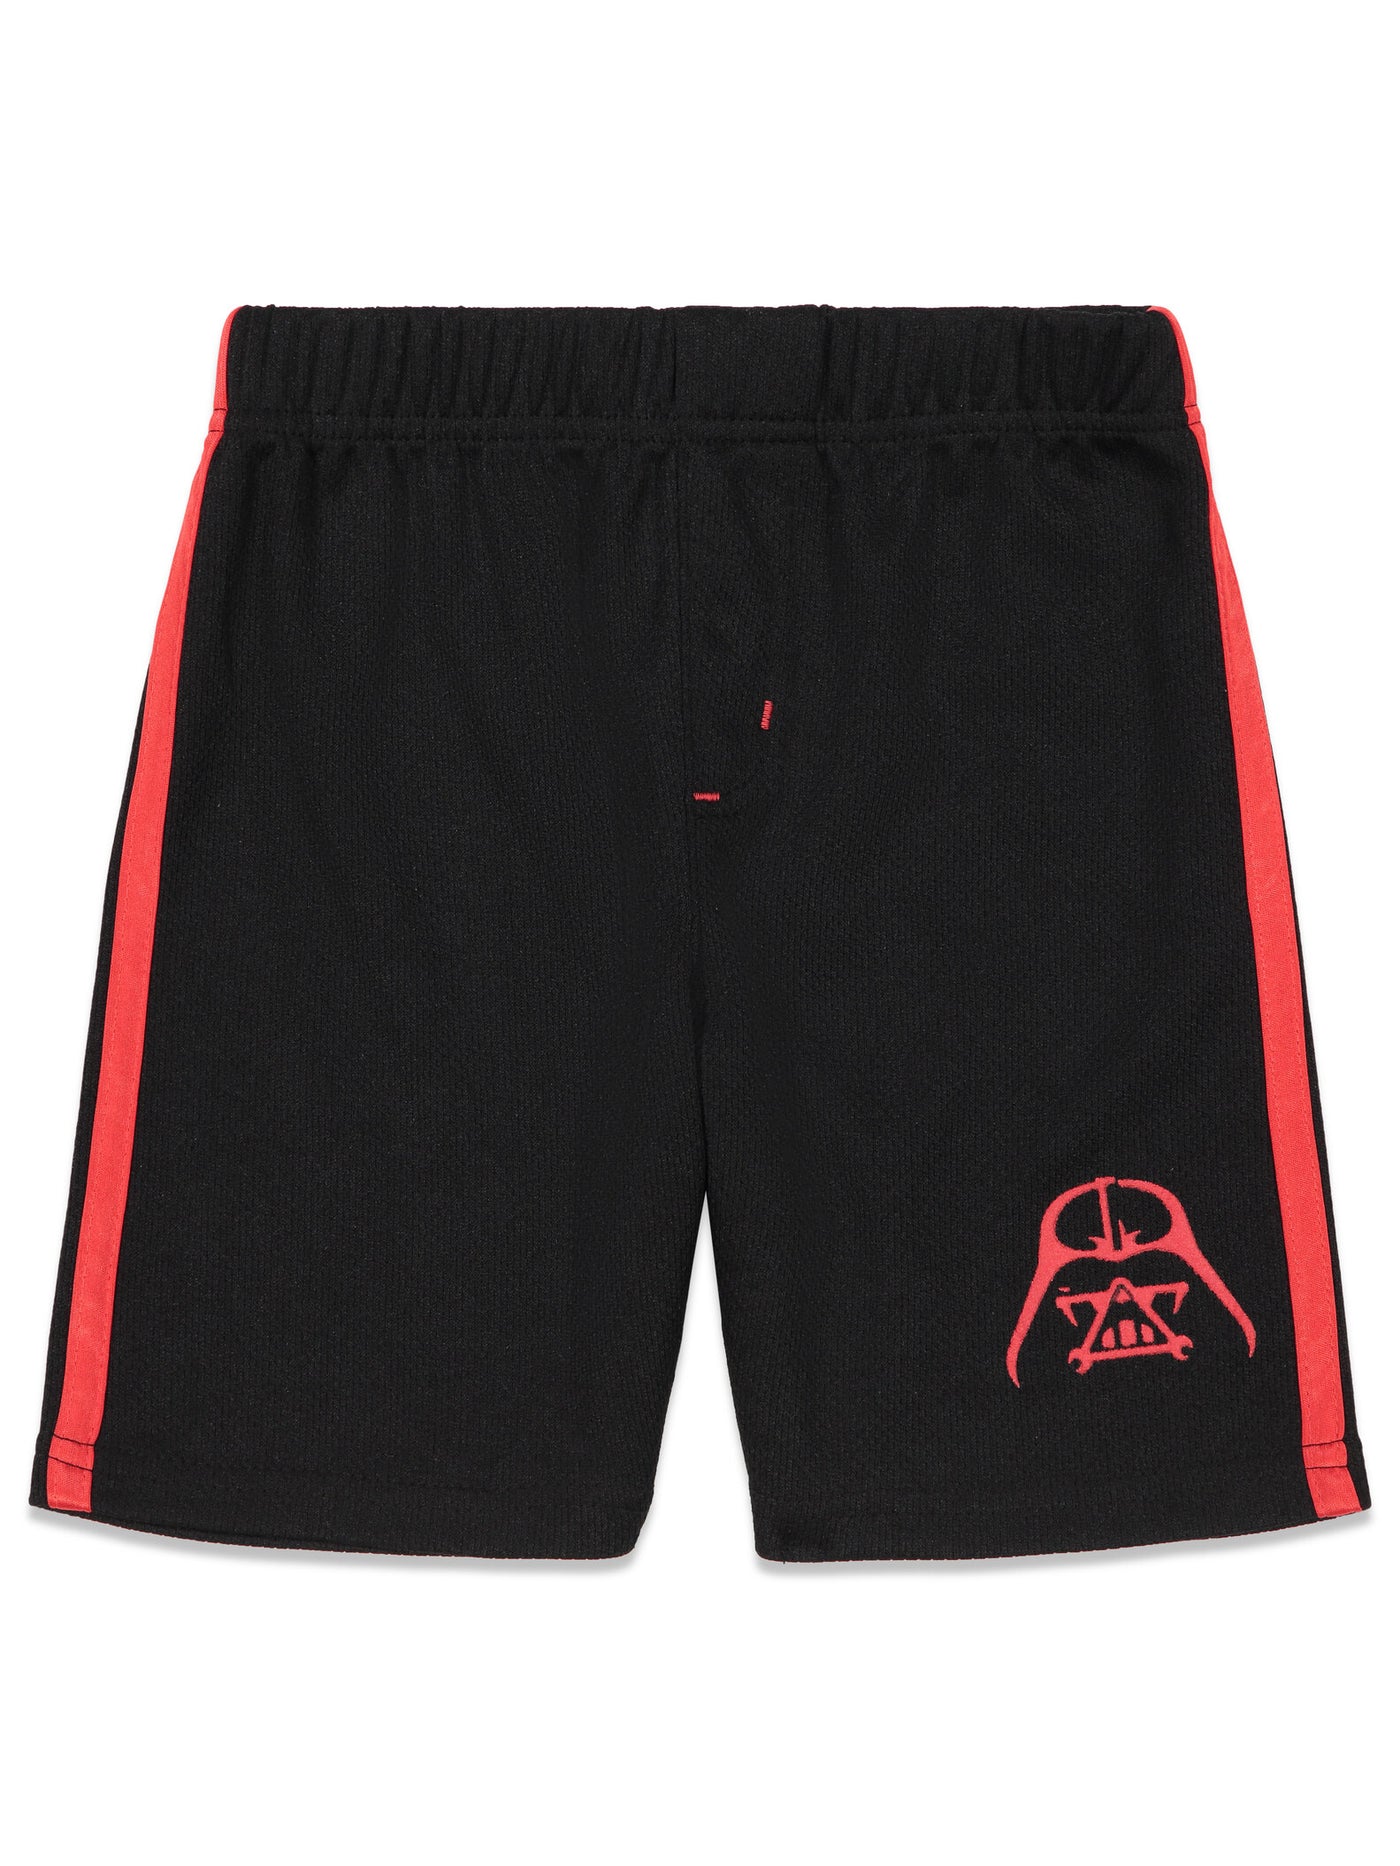 Star Wars Darth Vader Caped T-Shirt & Shorts Set